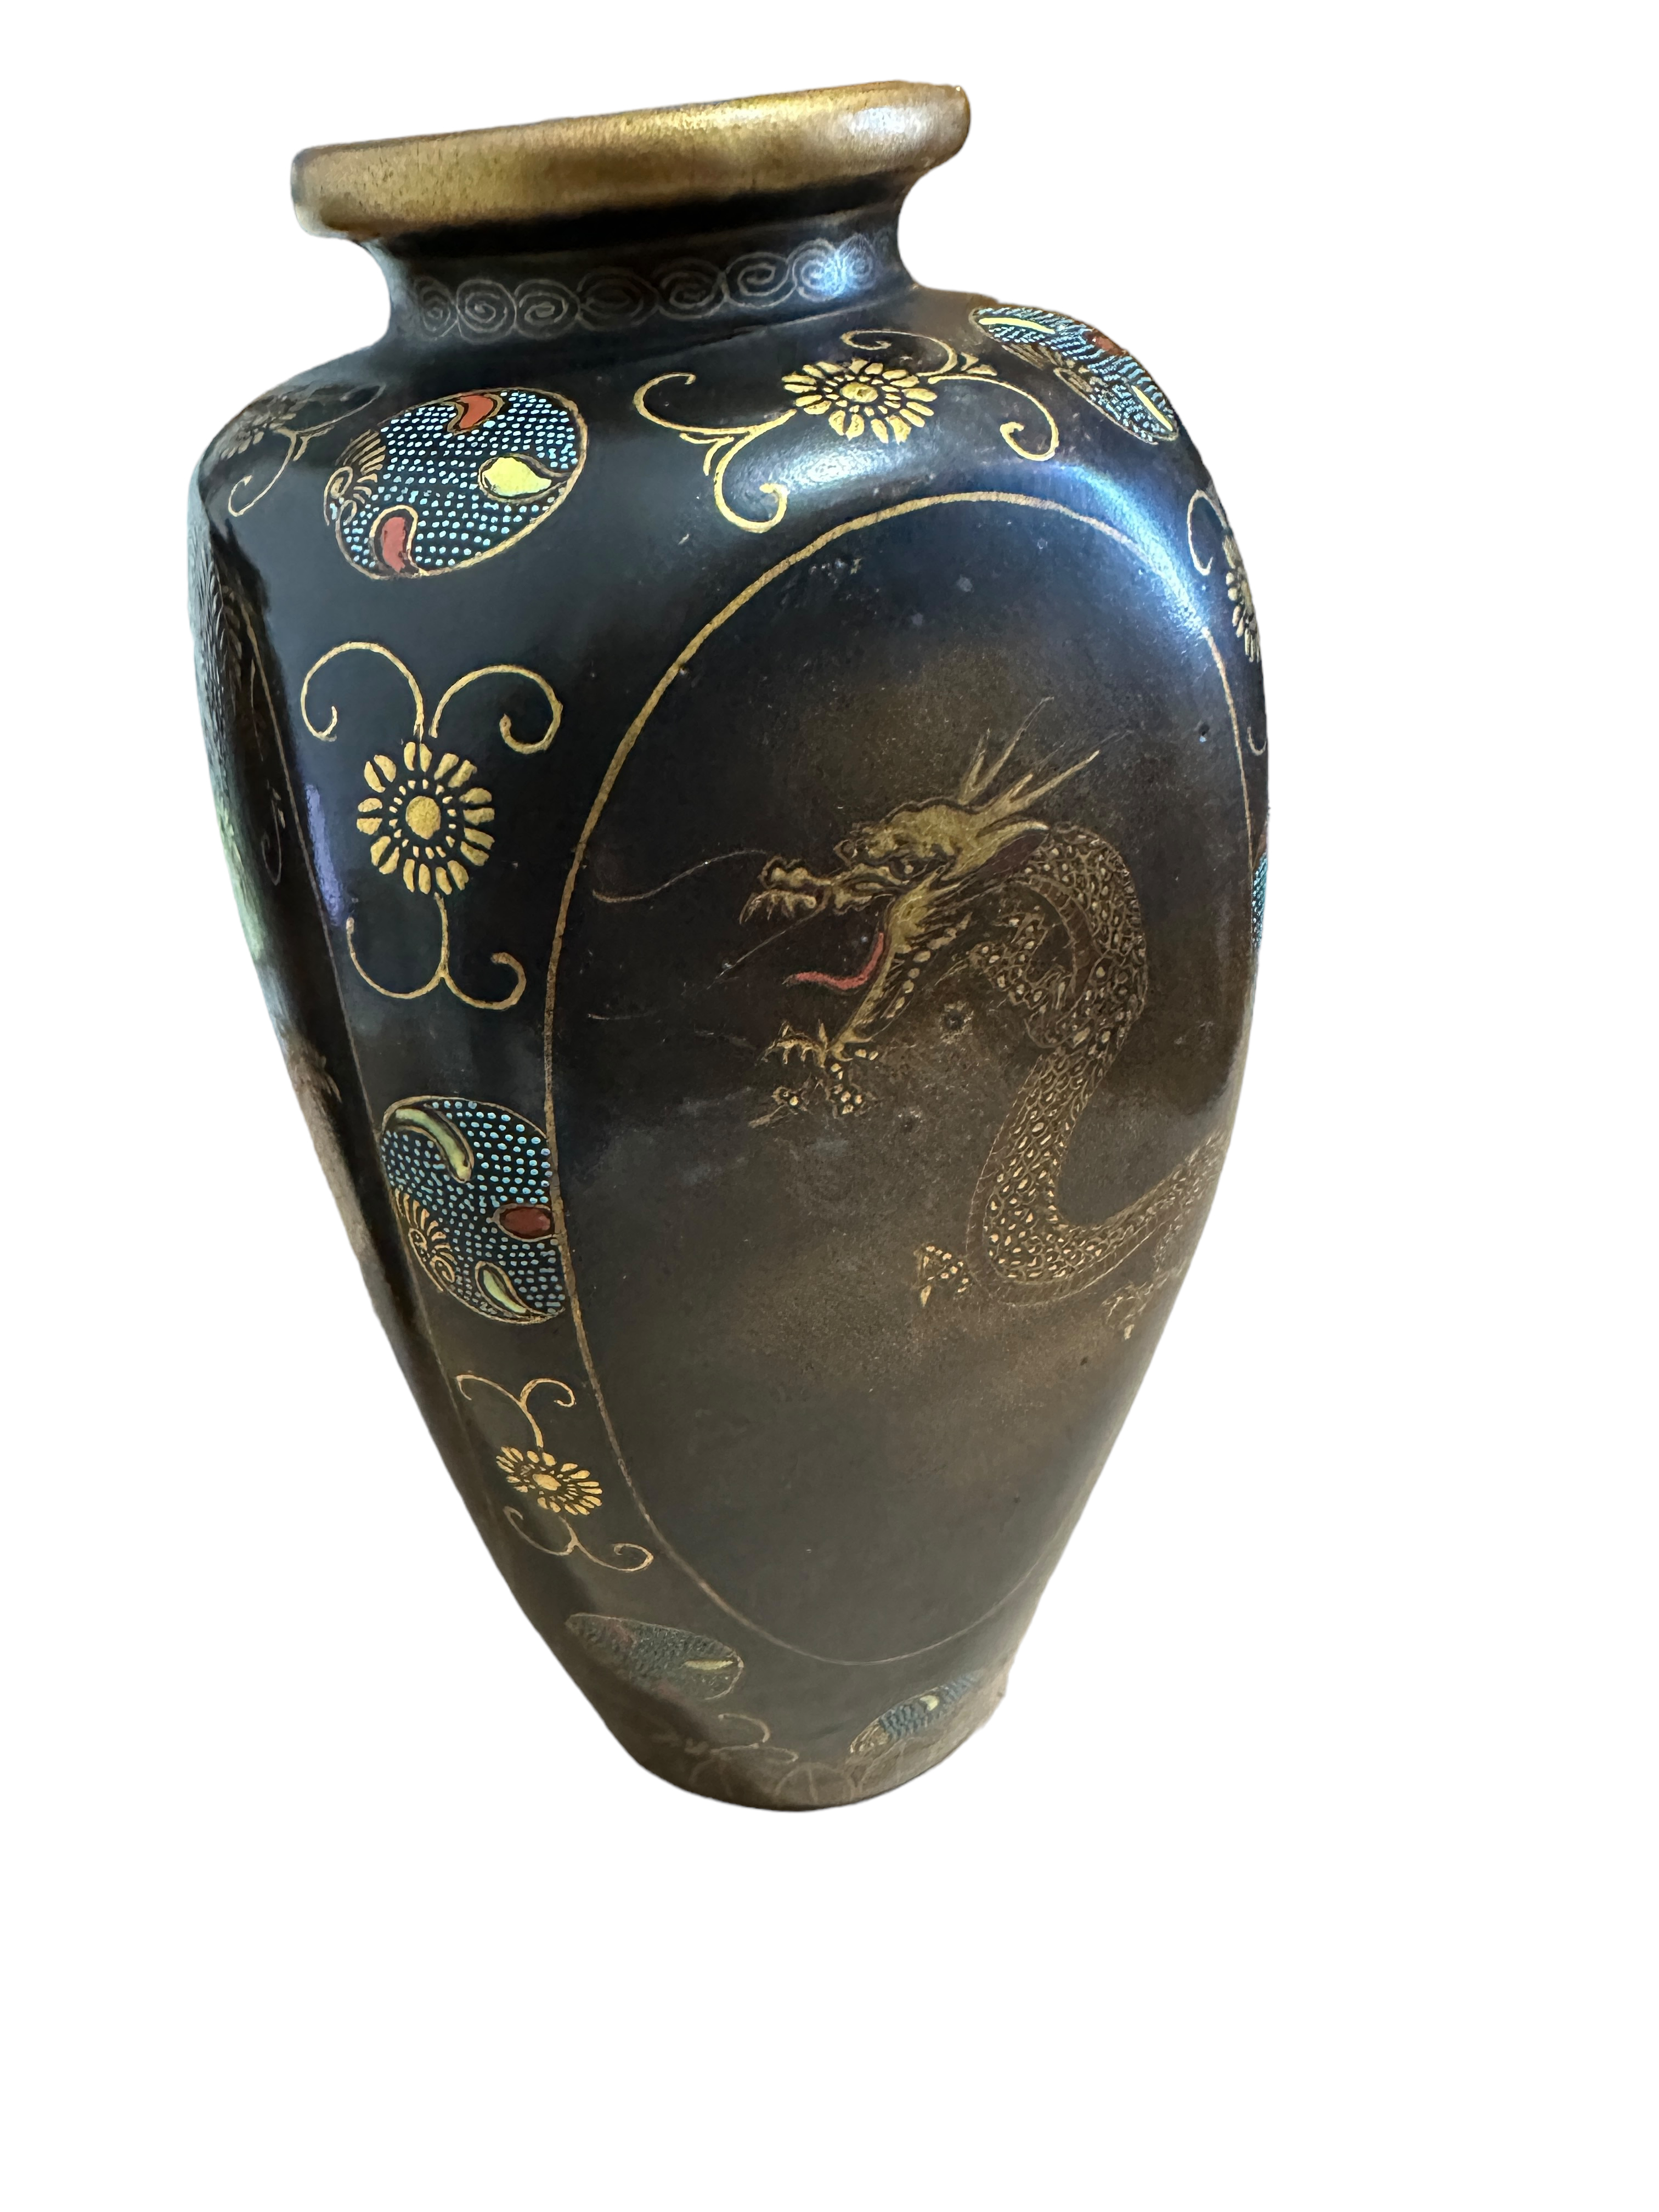 Pair of Antique Satsuma Vases - 22cm tall. - Image 4 of 7